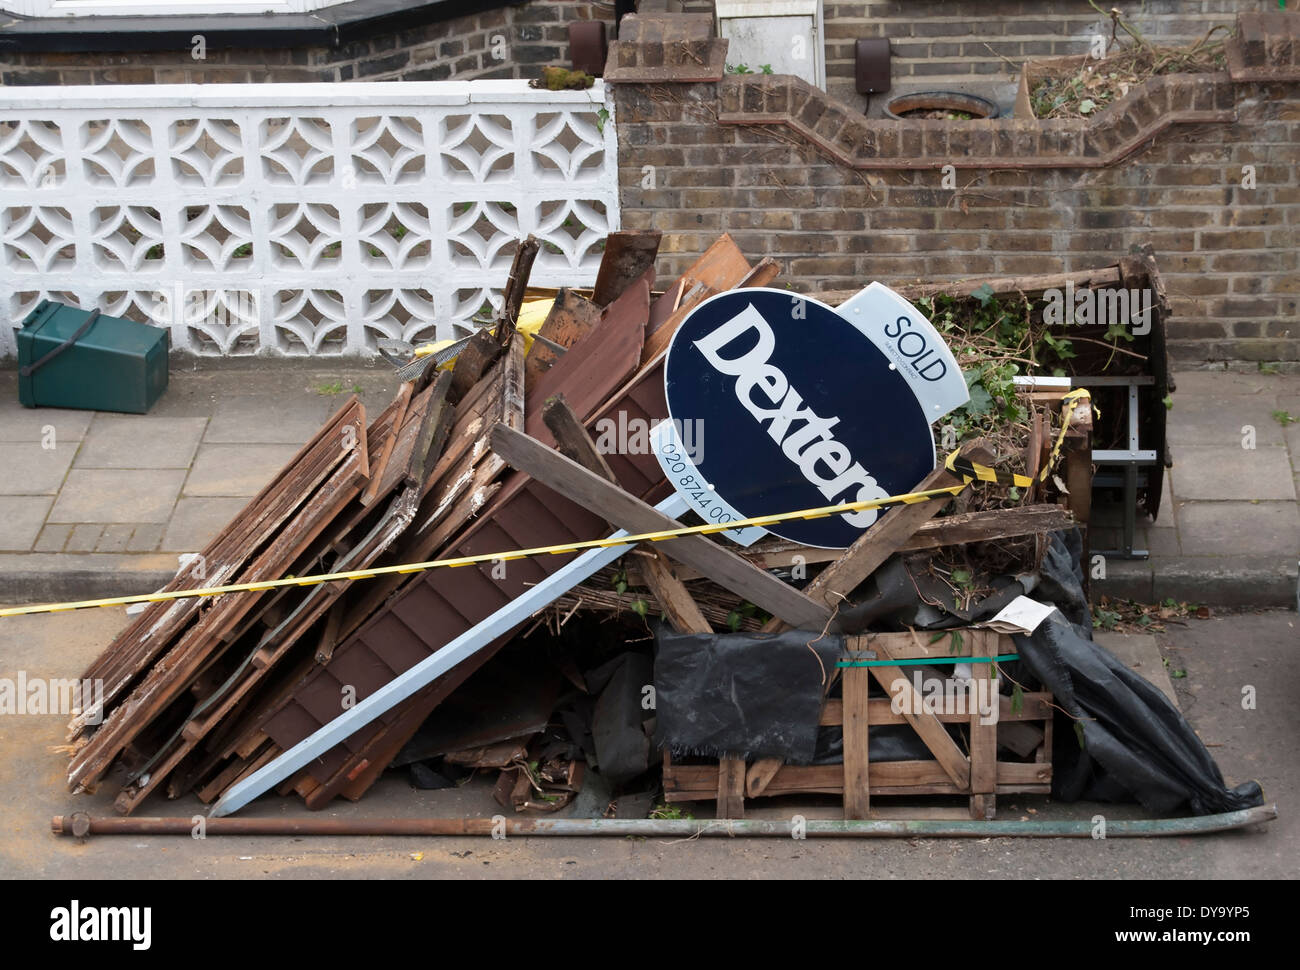 Agenti immobiliari venduti segno con un mucchio di rifiuti domestici, a Twickenham, middlesex, Inghilterra Foto Stock